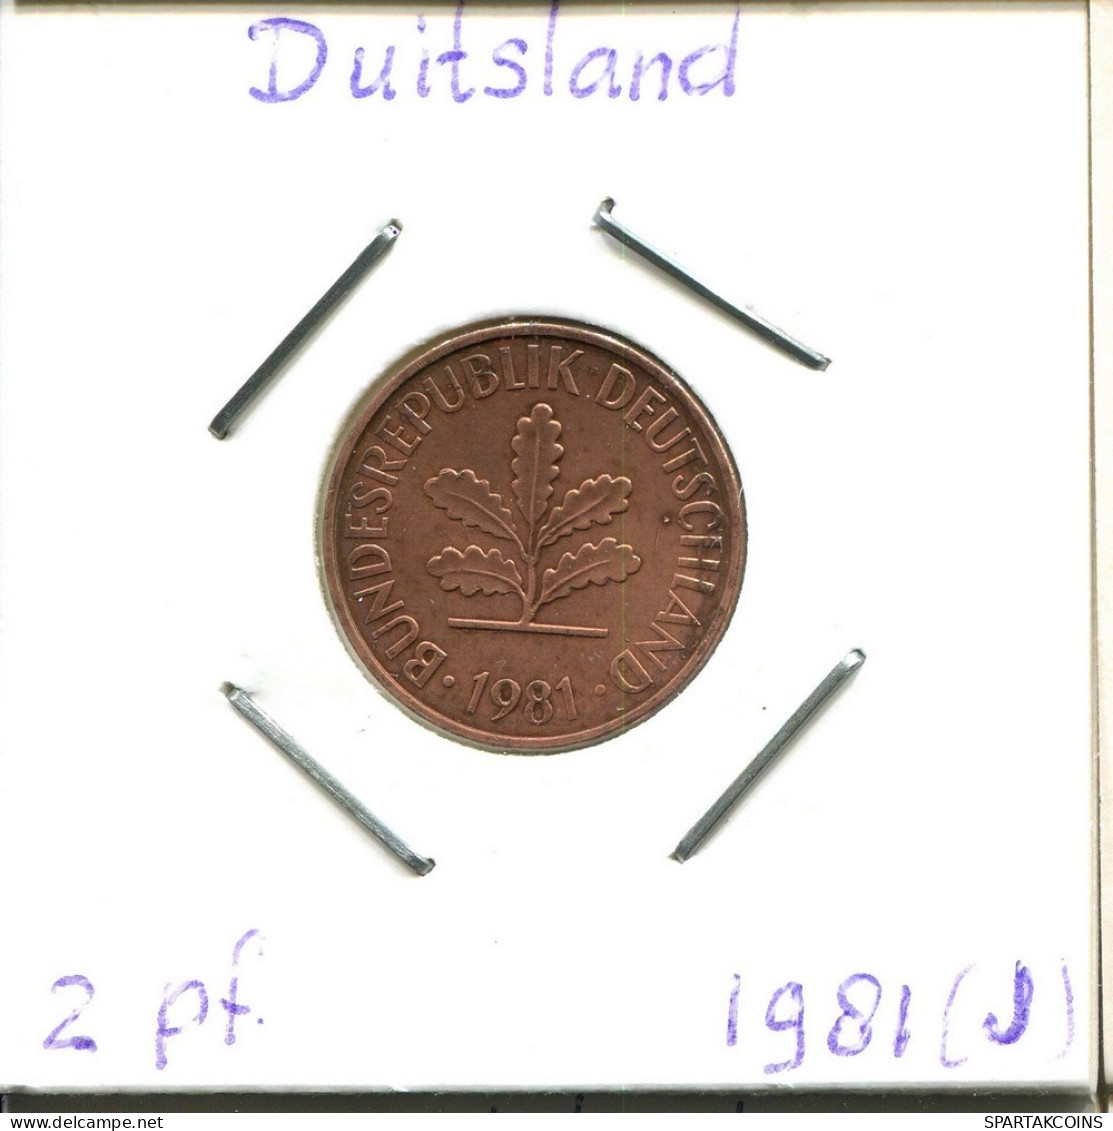 2 PFENNIG 1981 J WEST & UNIFIED GERMANY Coin #DC261.U.A - 2 Pfennig